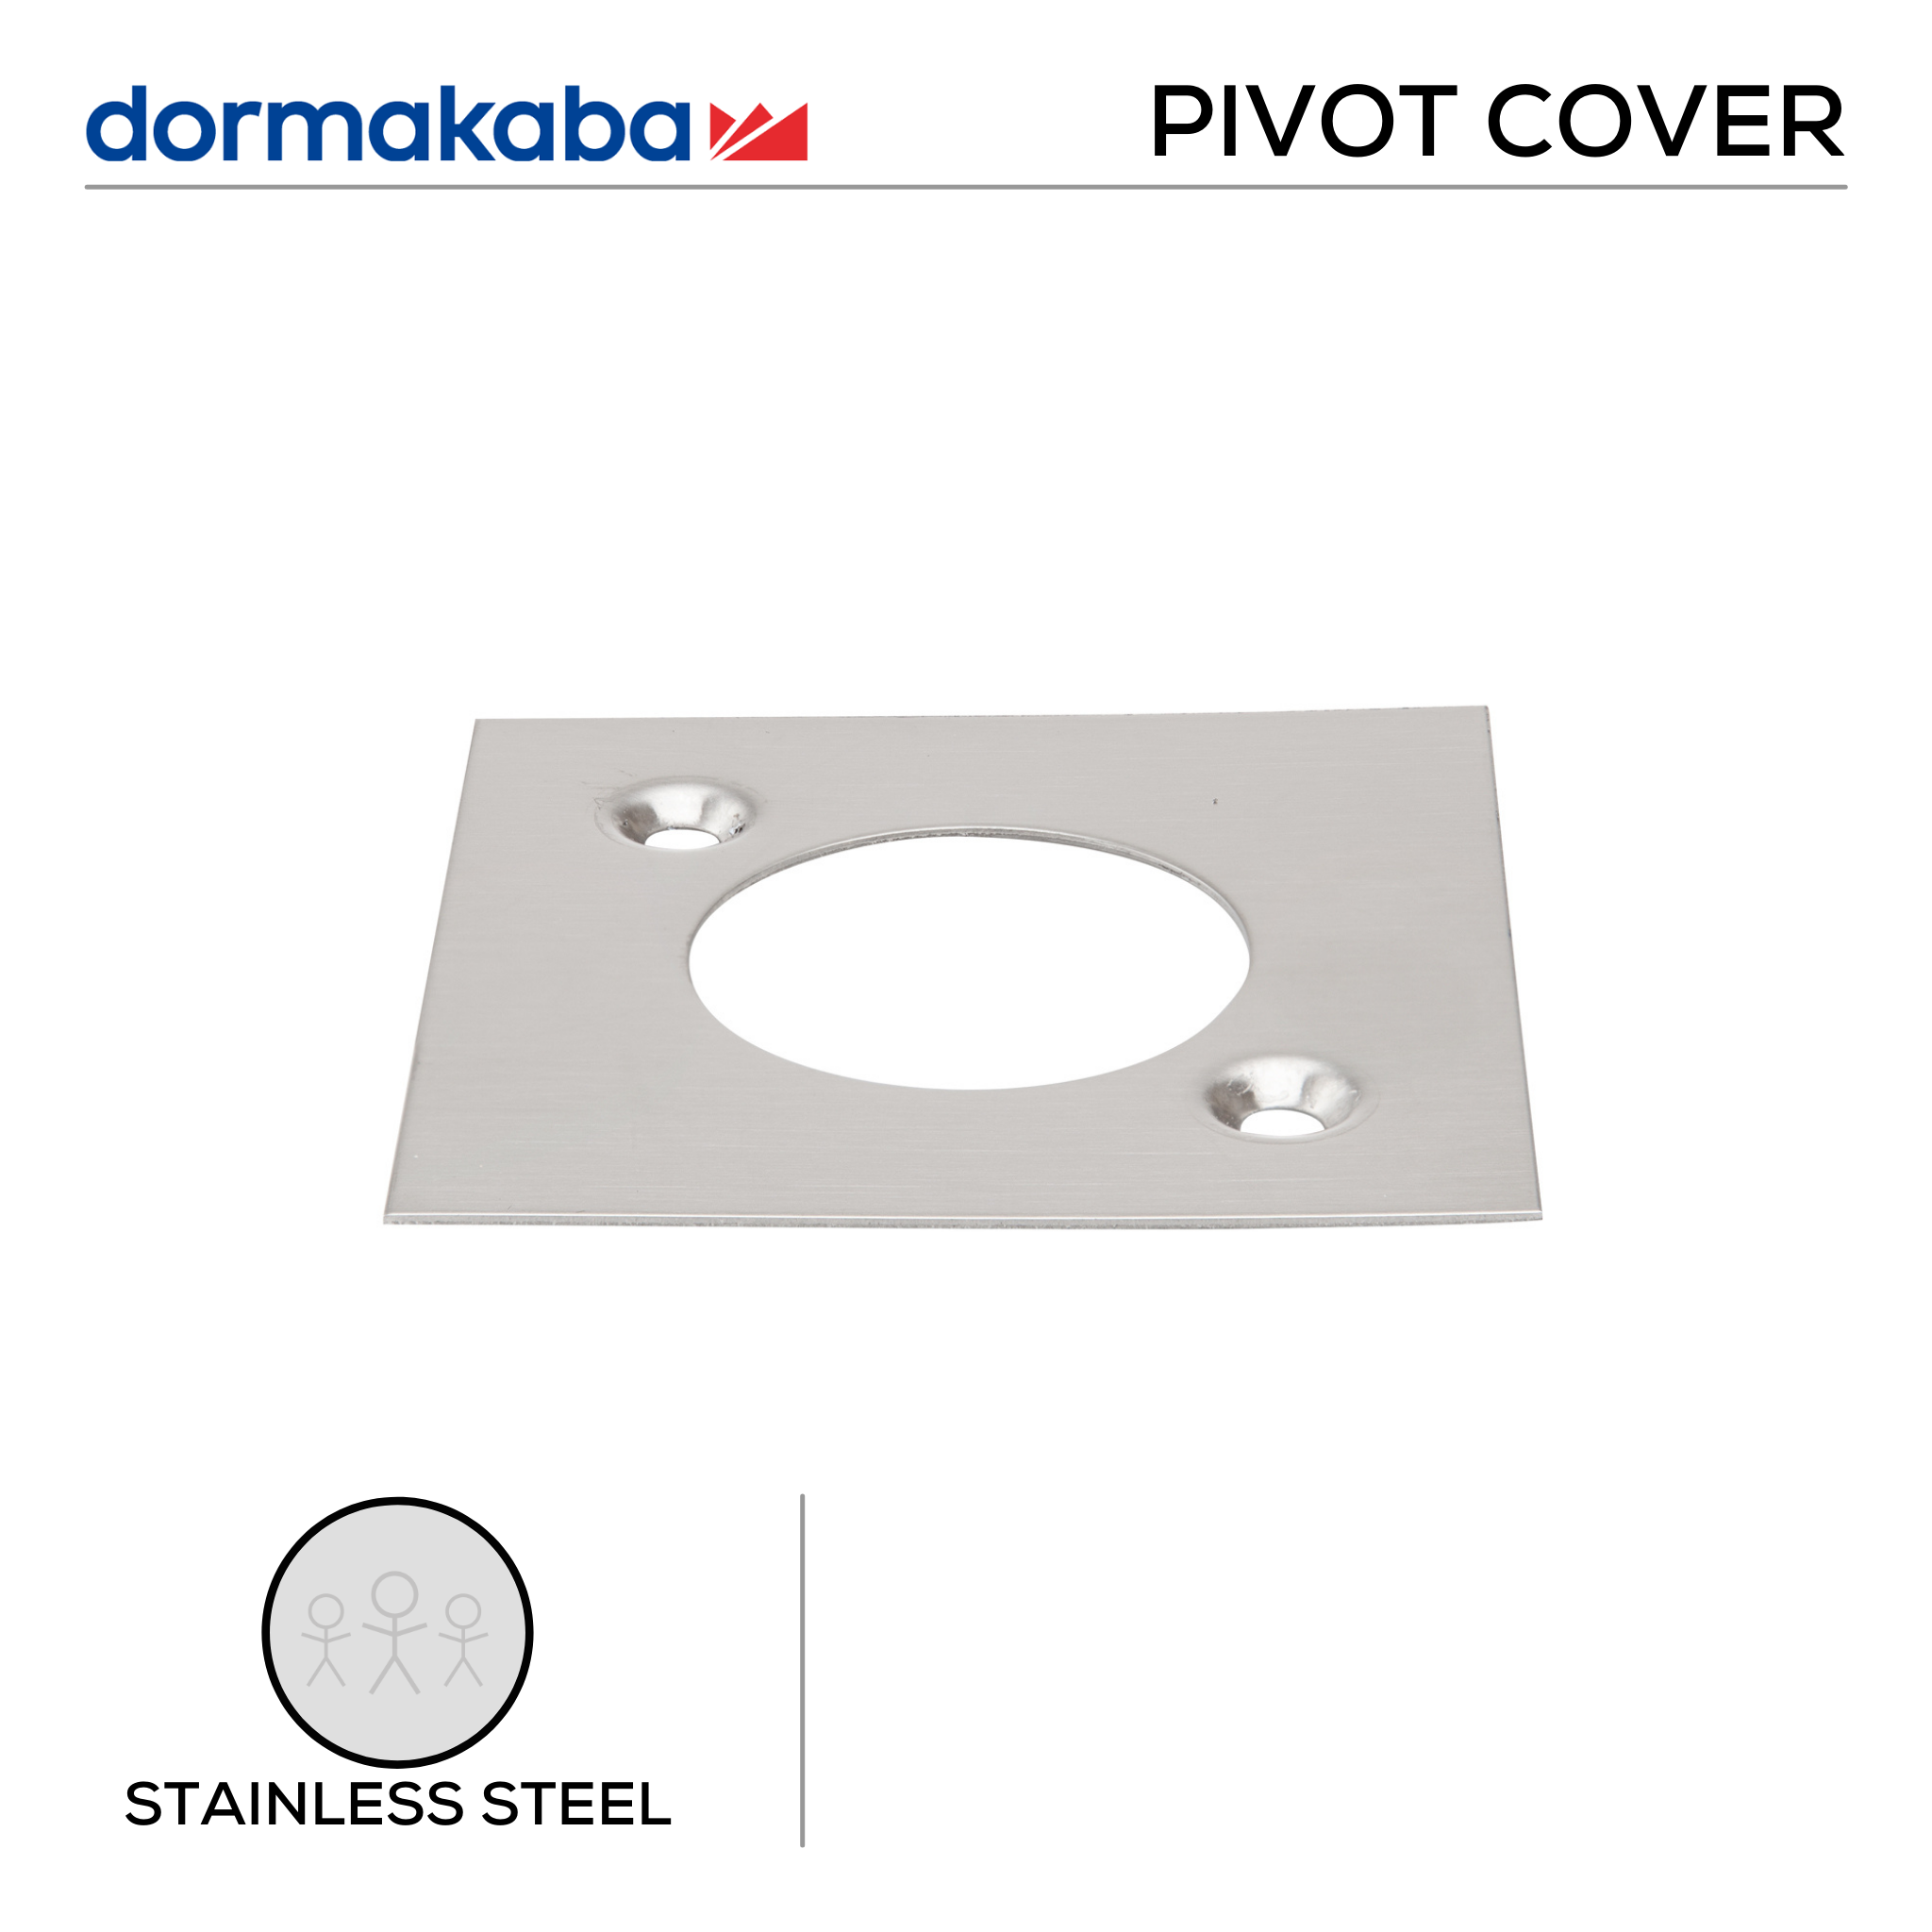 7470, Floor Pivot Cover, , Stainless Steel, DORMAKABA